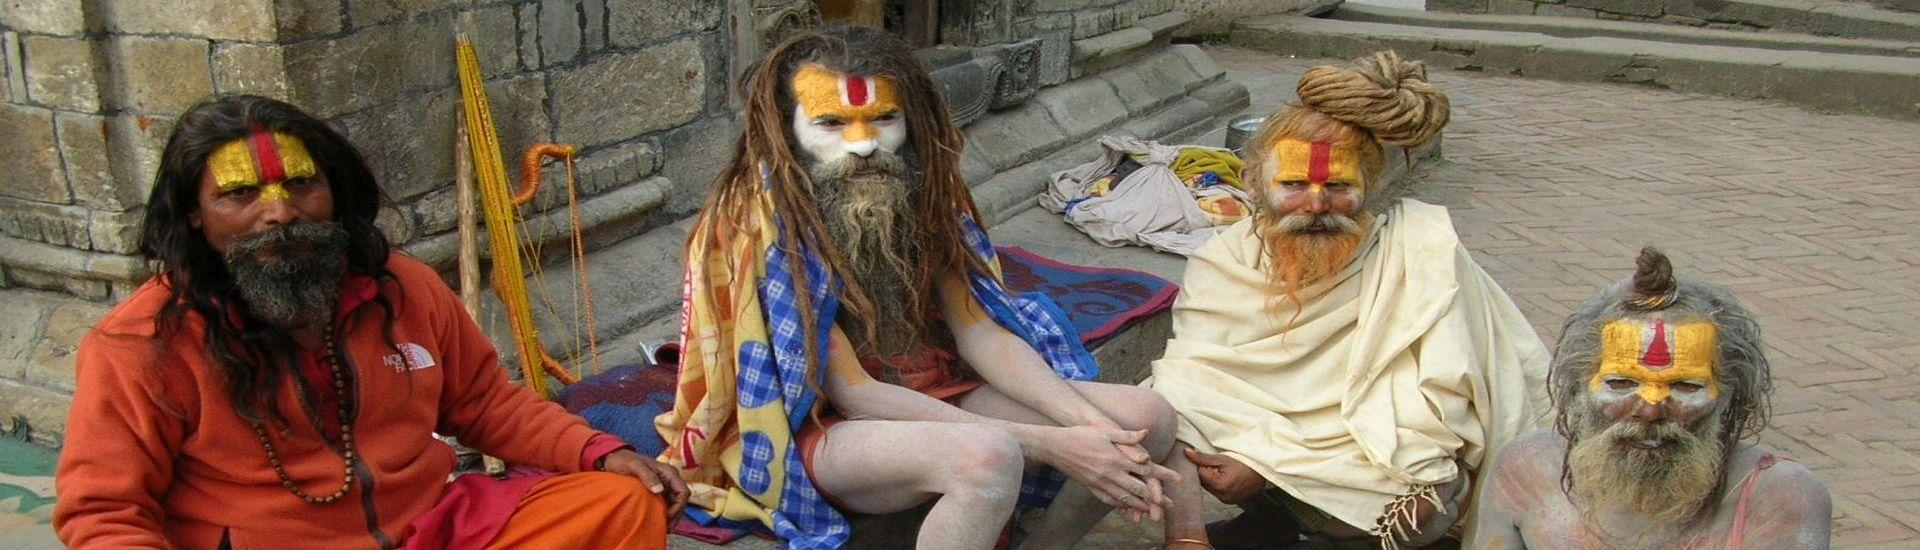 Namaste! Indie, Nepal